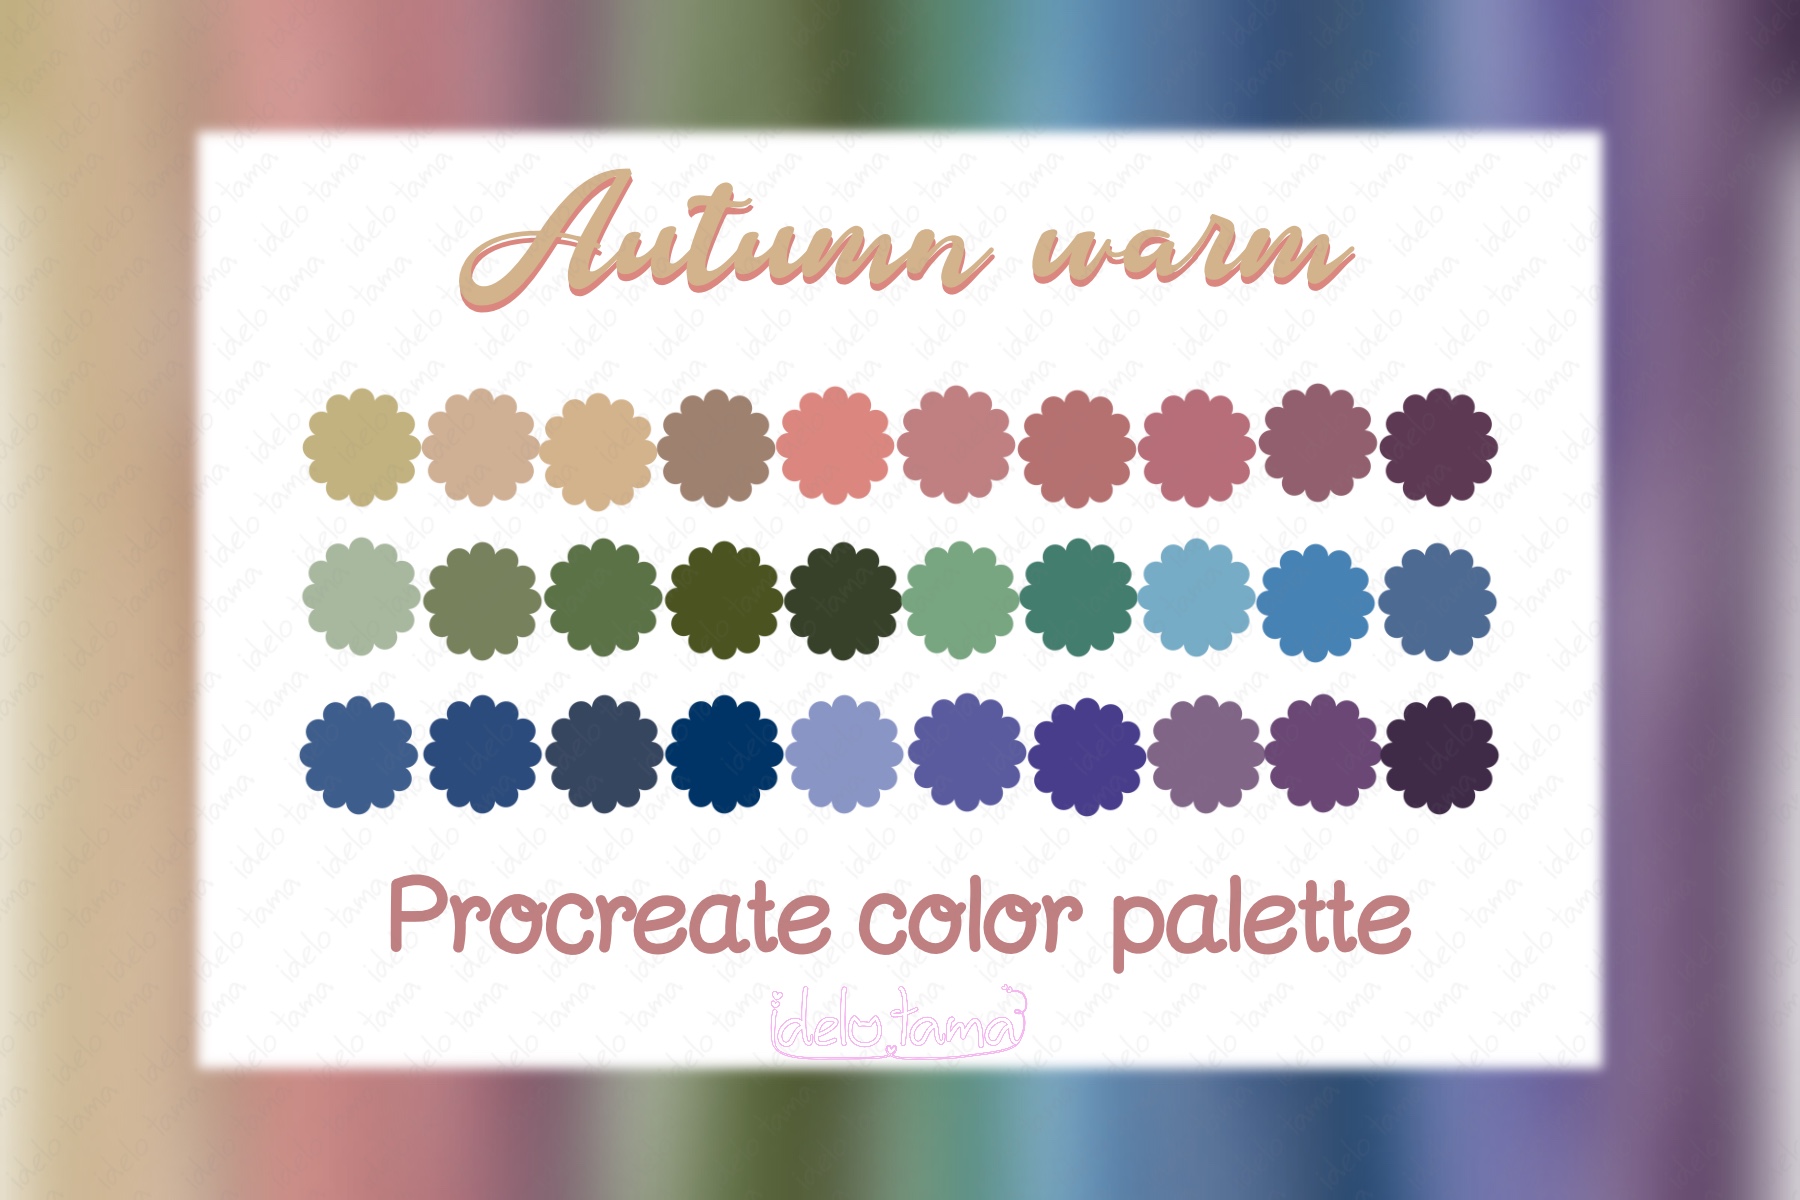 Procreate Color Palette Autumn Warm